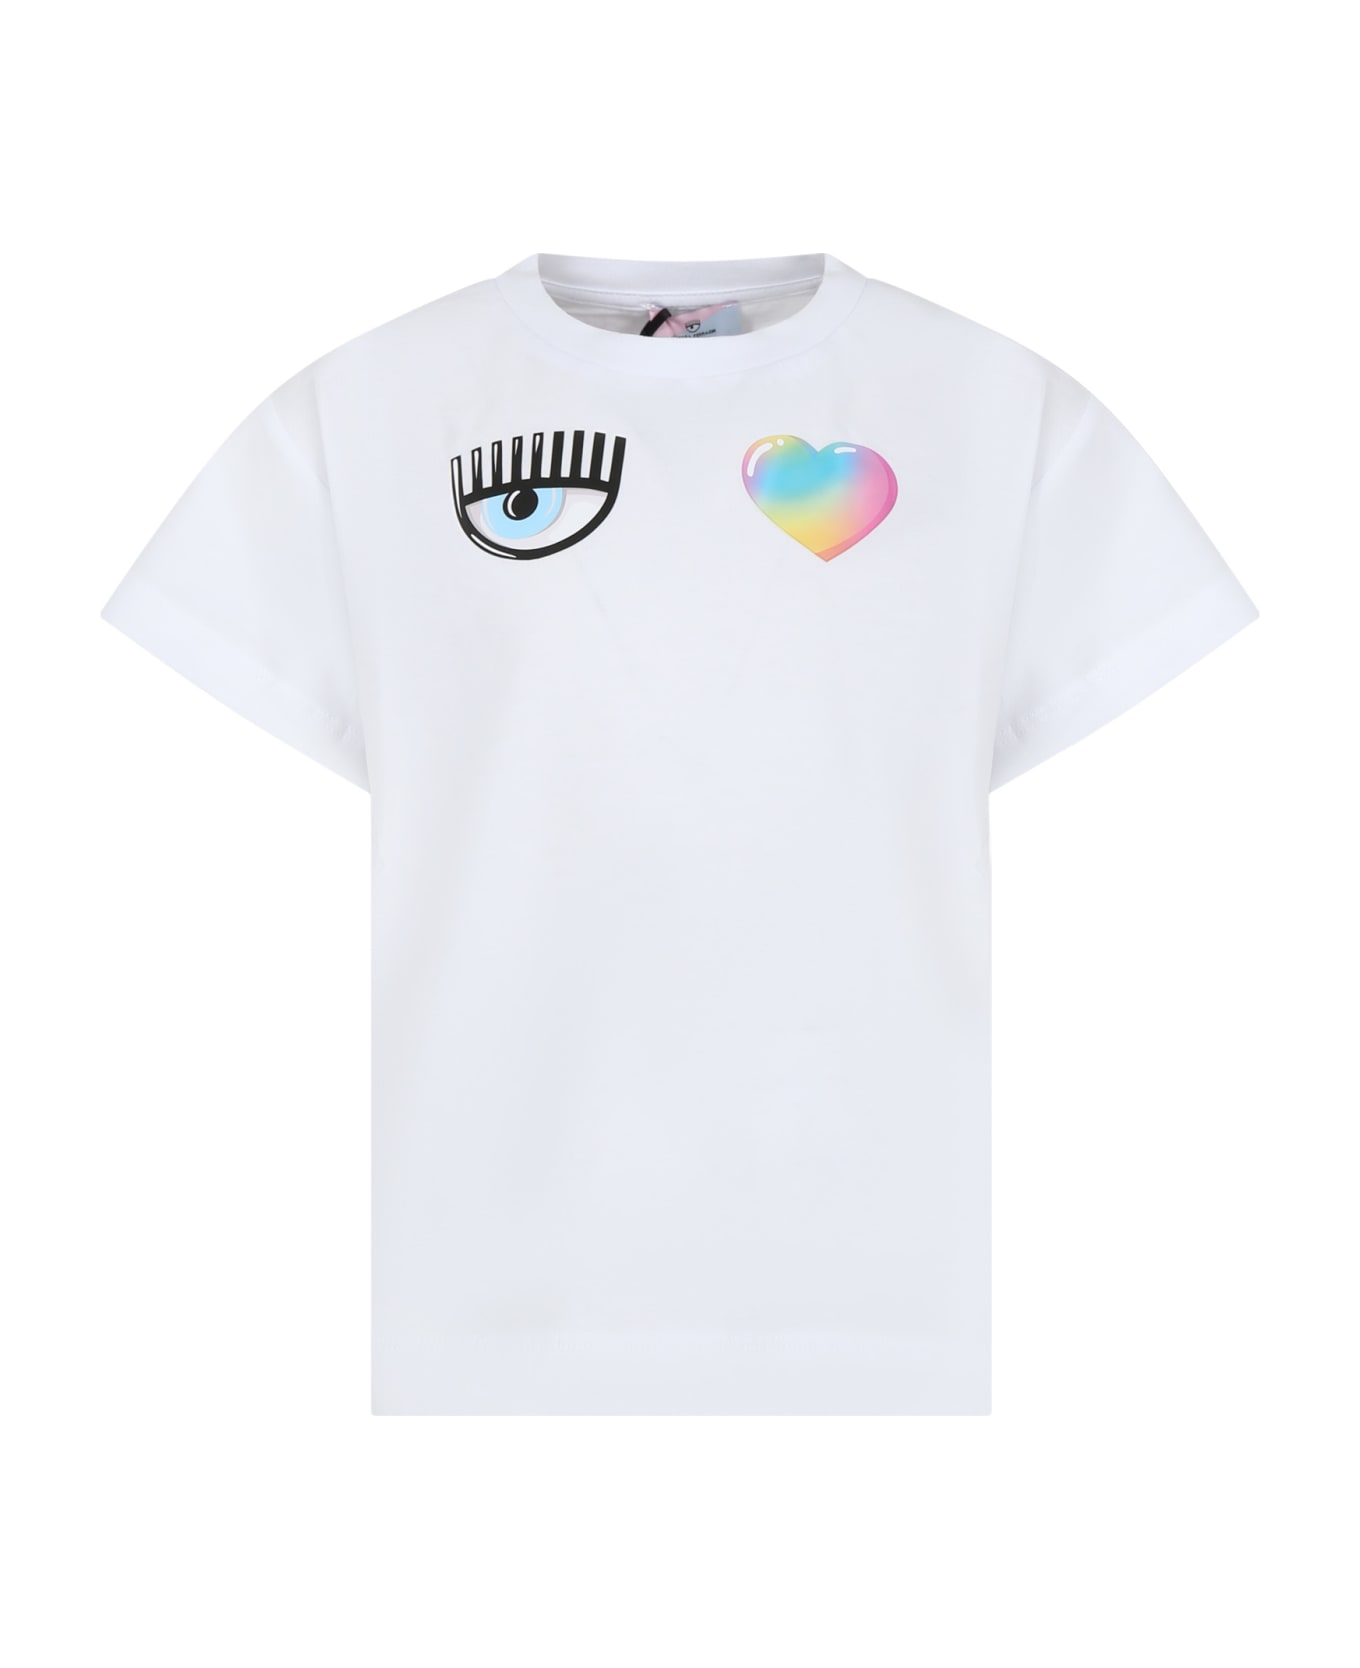 Chiara Ferragni White T-shirt For Girl With Flirting Eyes And Heart - White